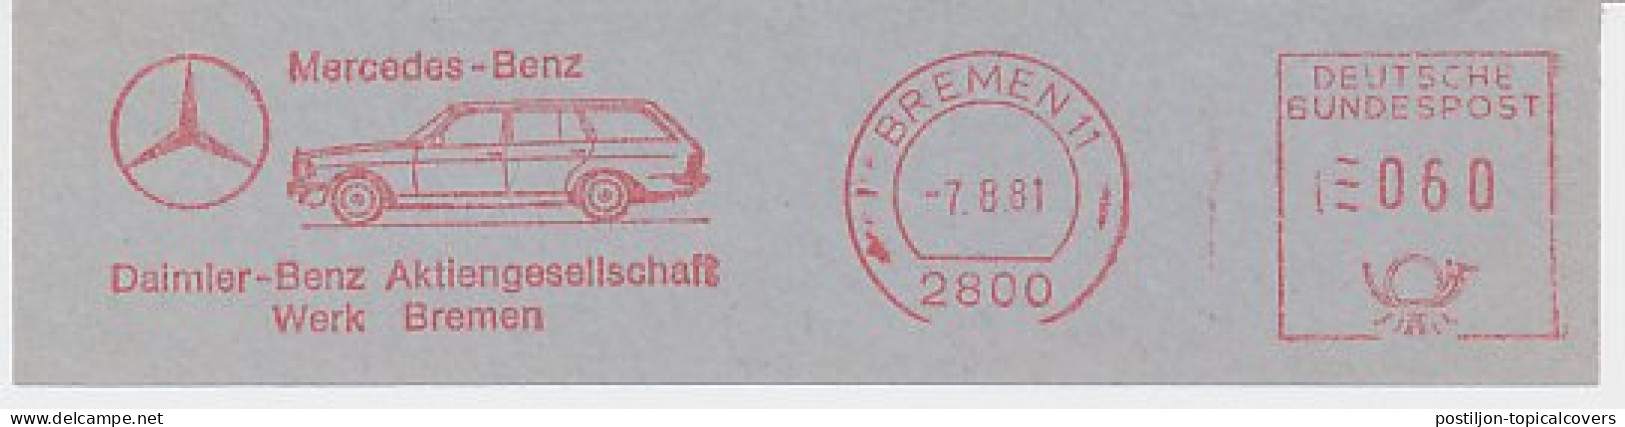 Meter Cut Germany 1981 Car - Mercedes Benz - Cars